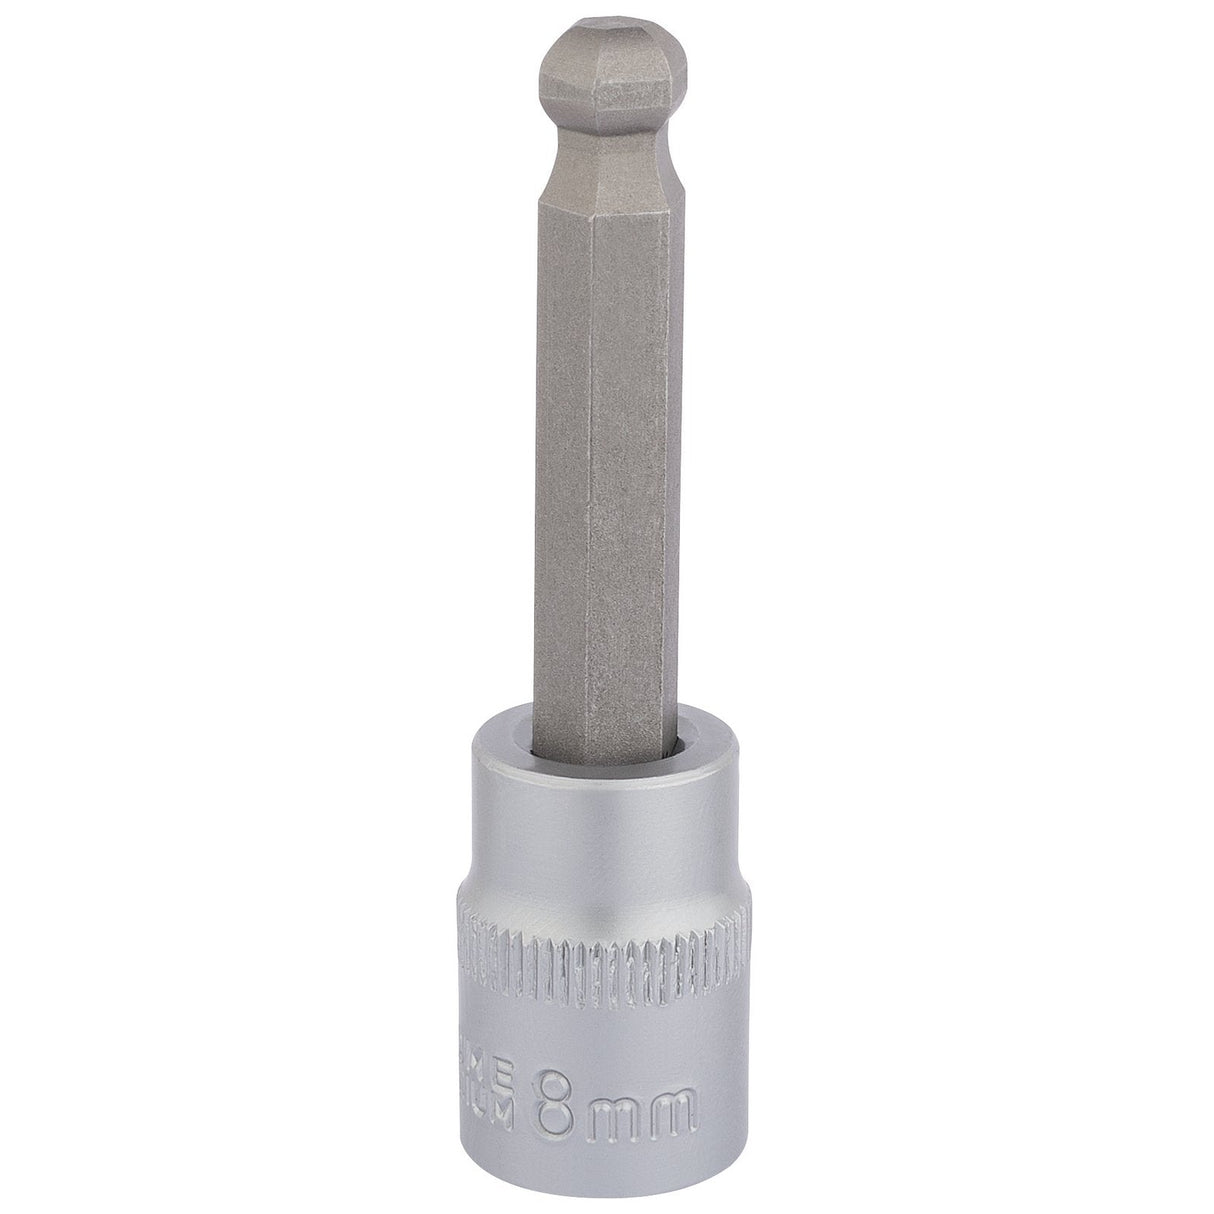 Draper Ball End Hexagonal Socket Bits, 3/8" Sq. Dr., 8mm - D-HEX-BALL/B - Farming Parts